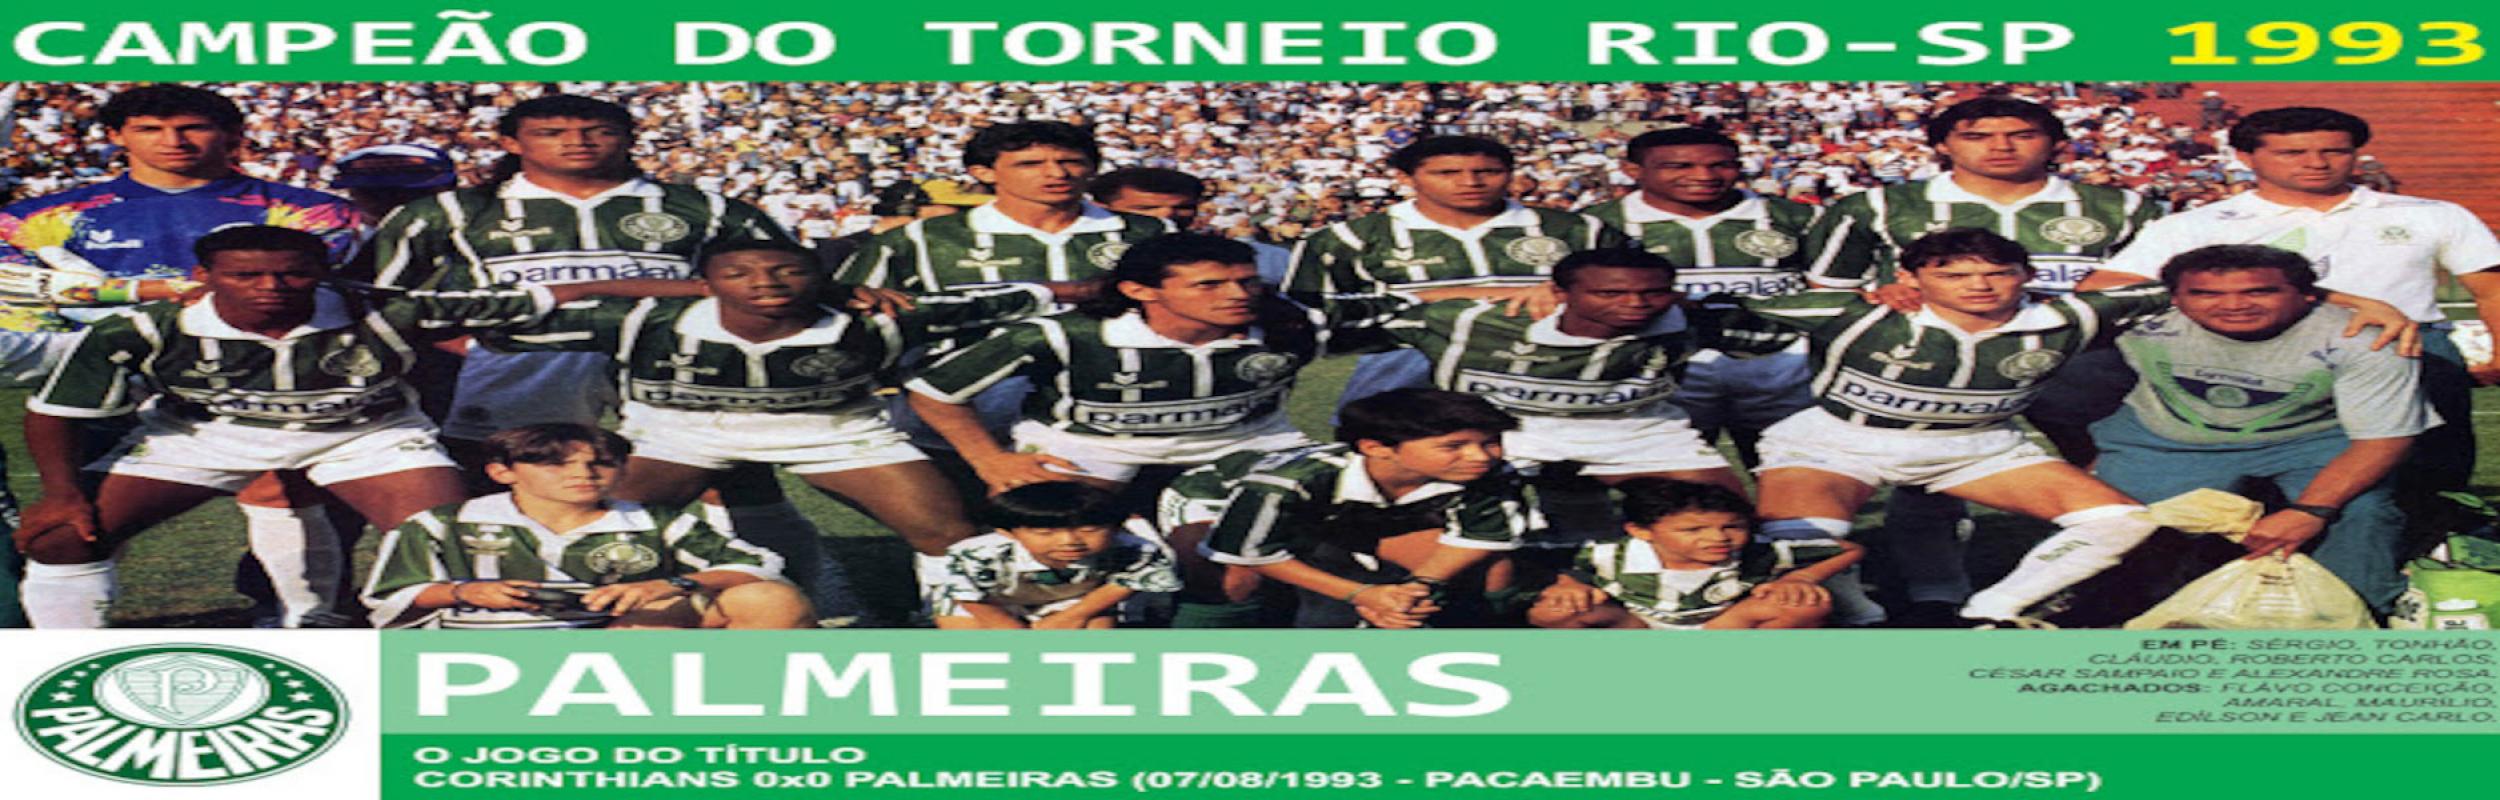 Torneio Rio-São Paulo 1993